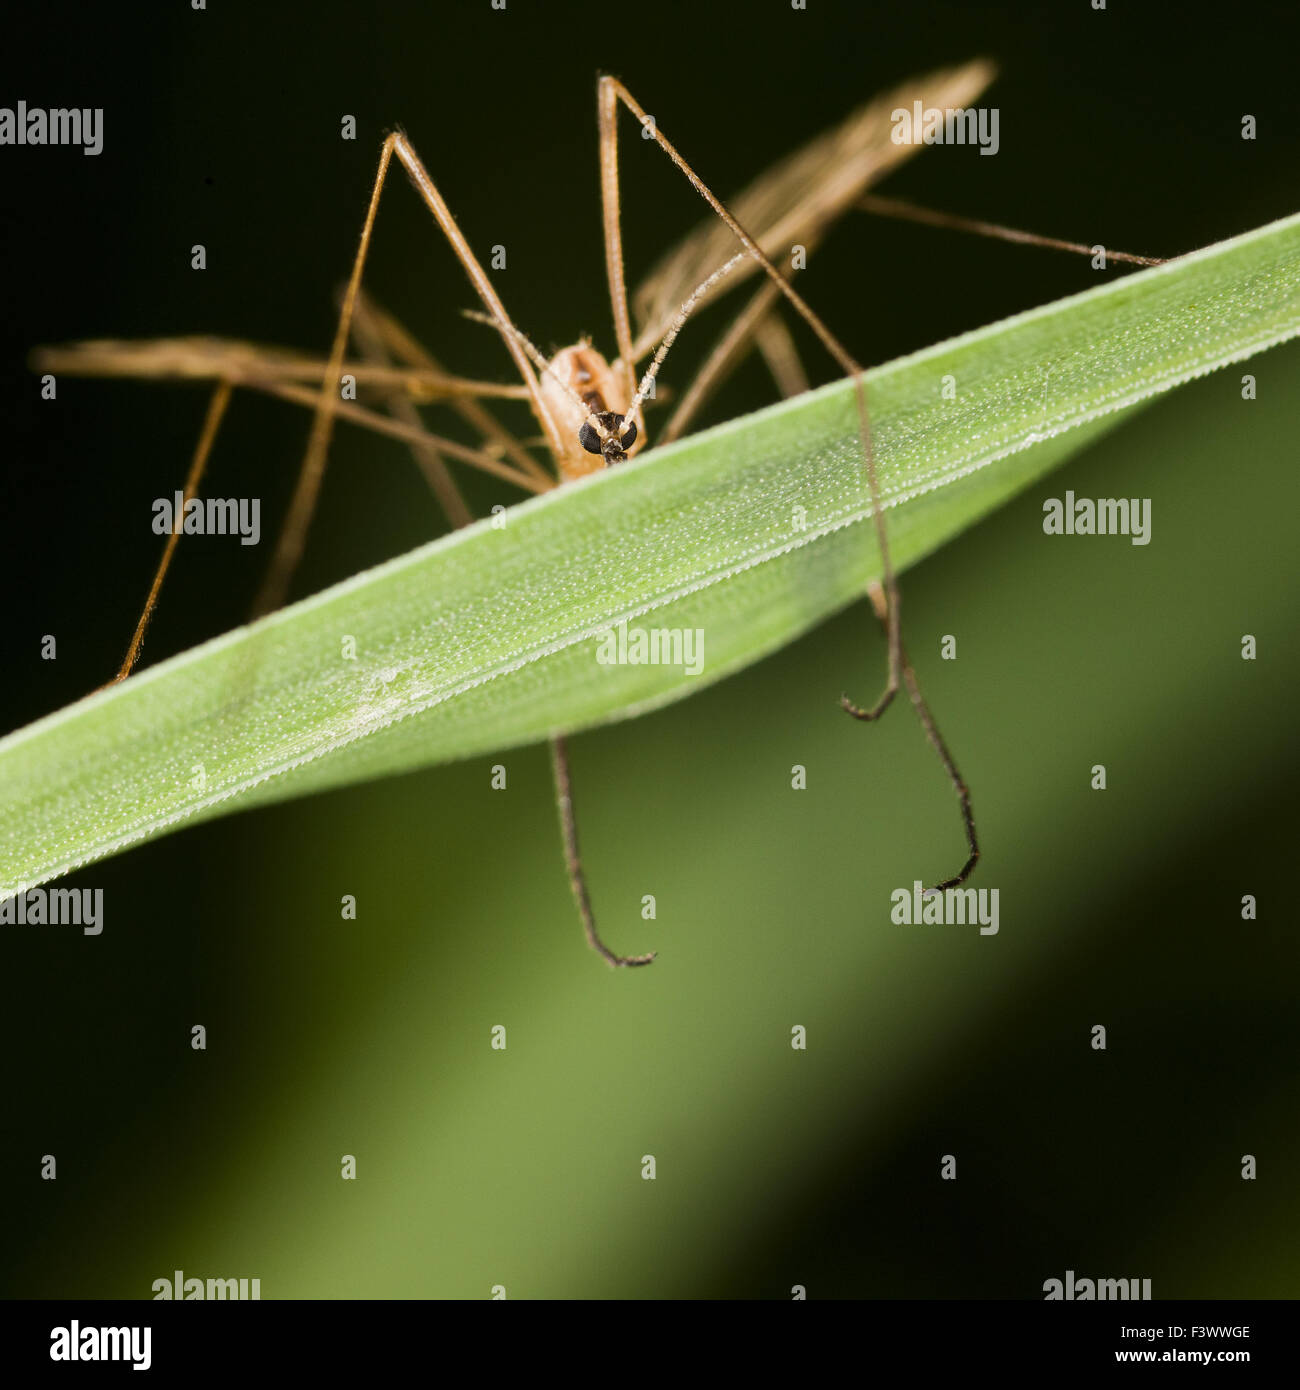 Cranefly  Tipula maxima Stock Photo